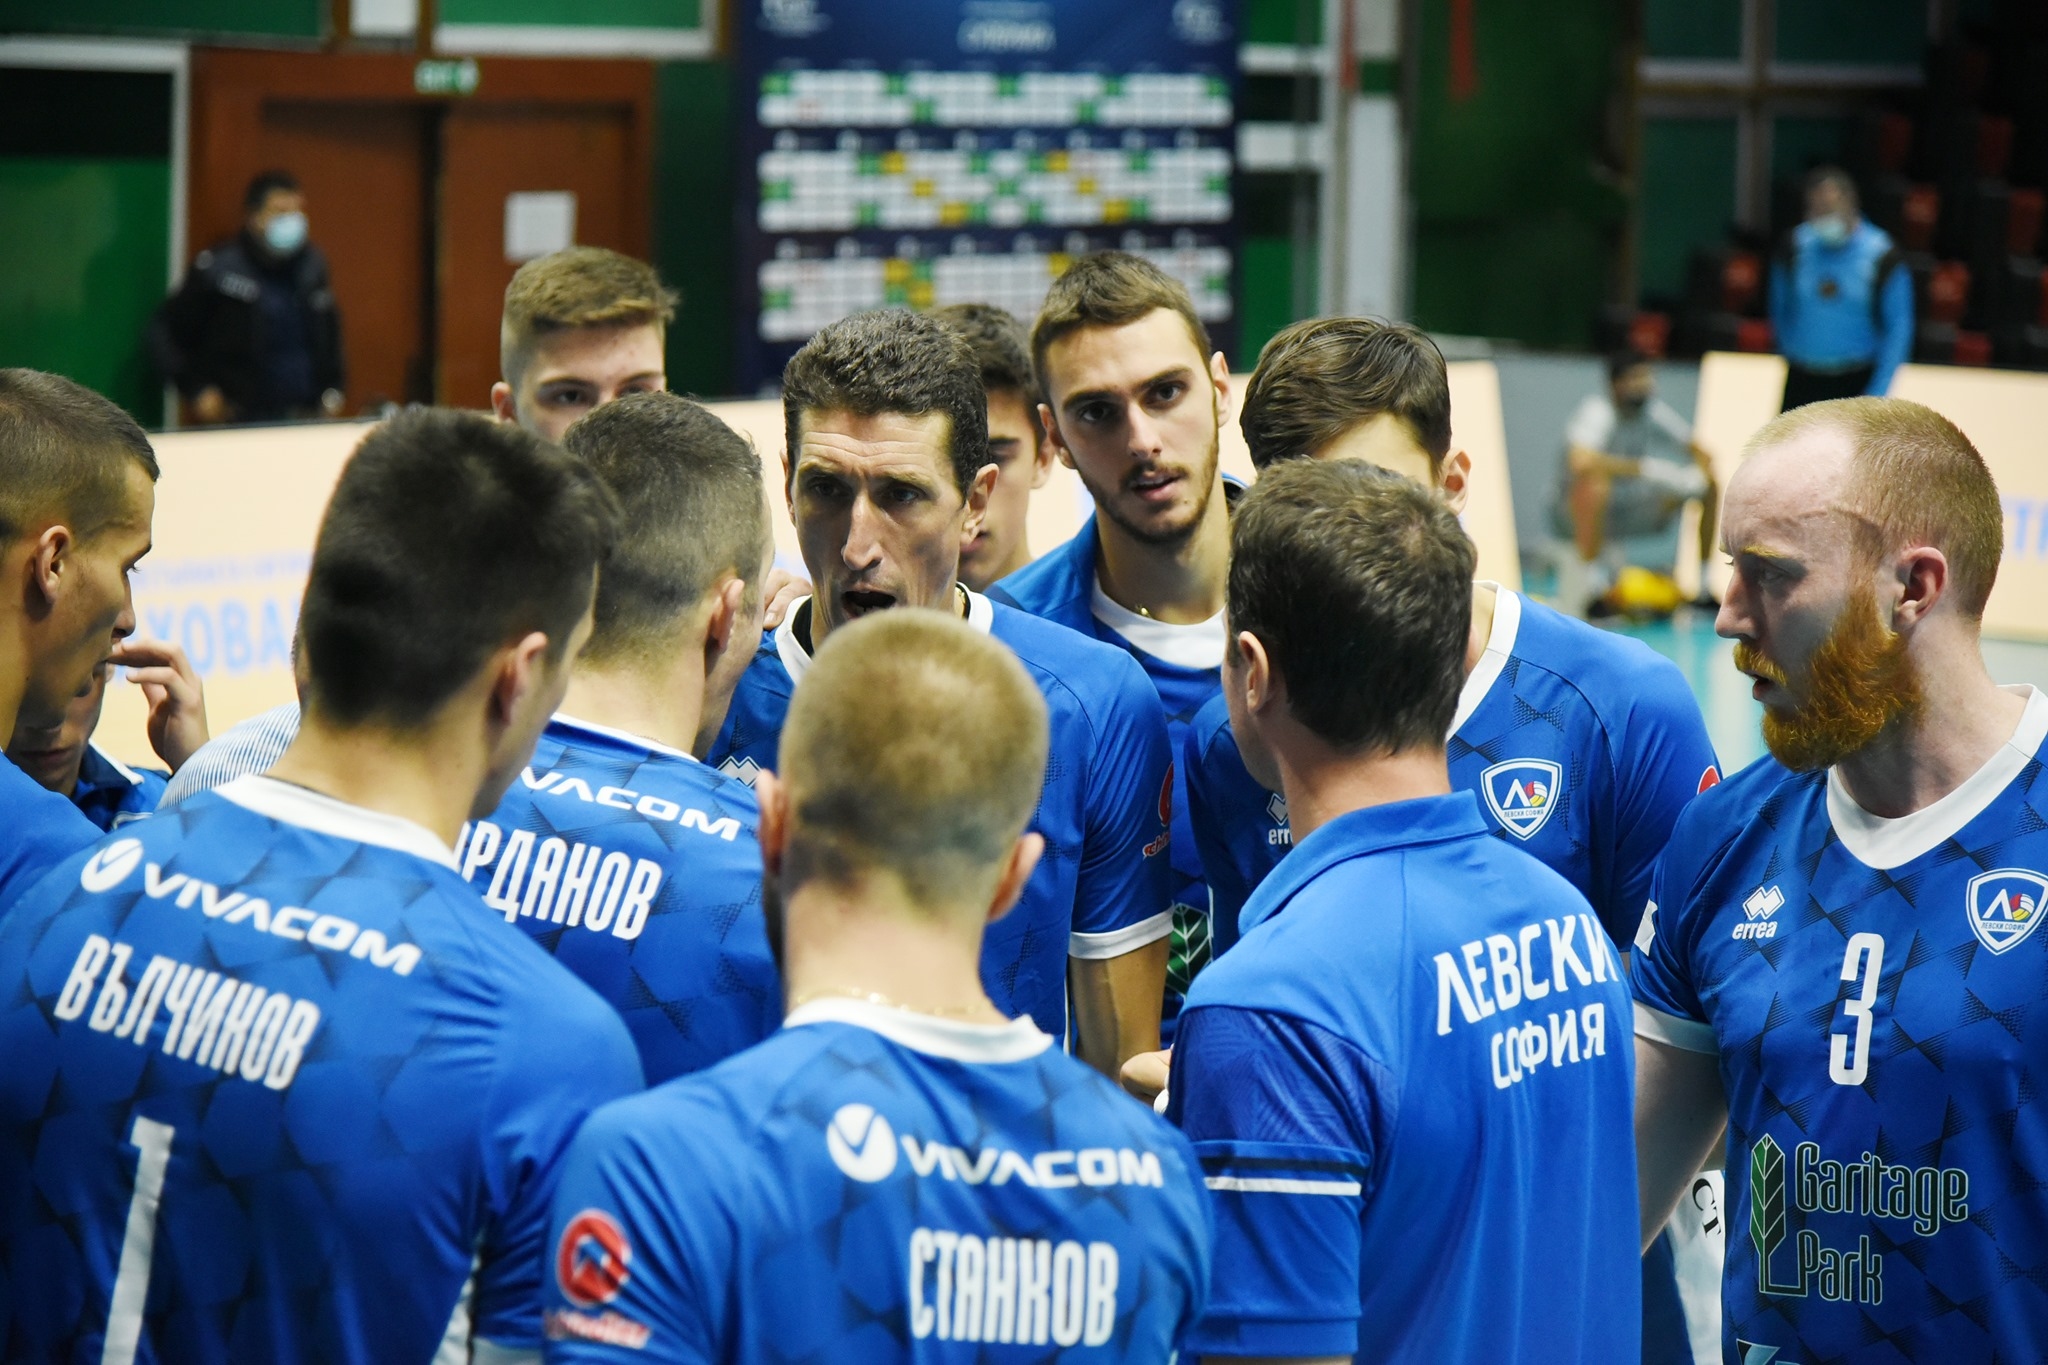 Във волейболен клуб Левски София очакват решение за евентуално отлагане